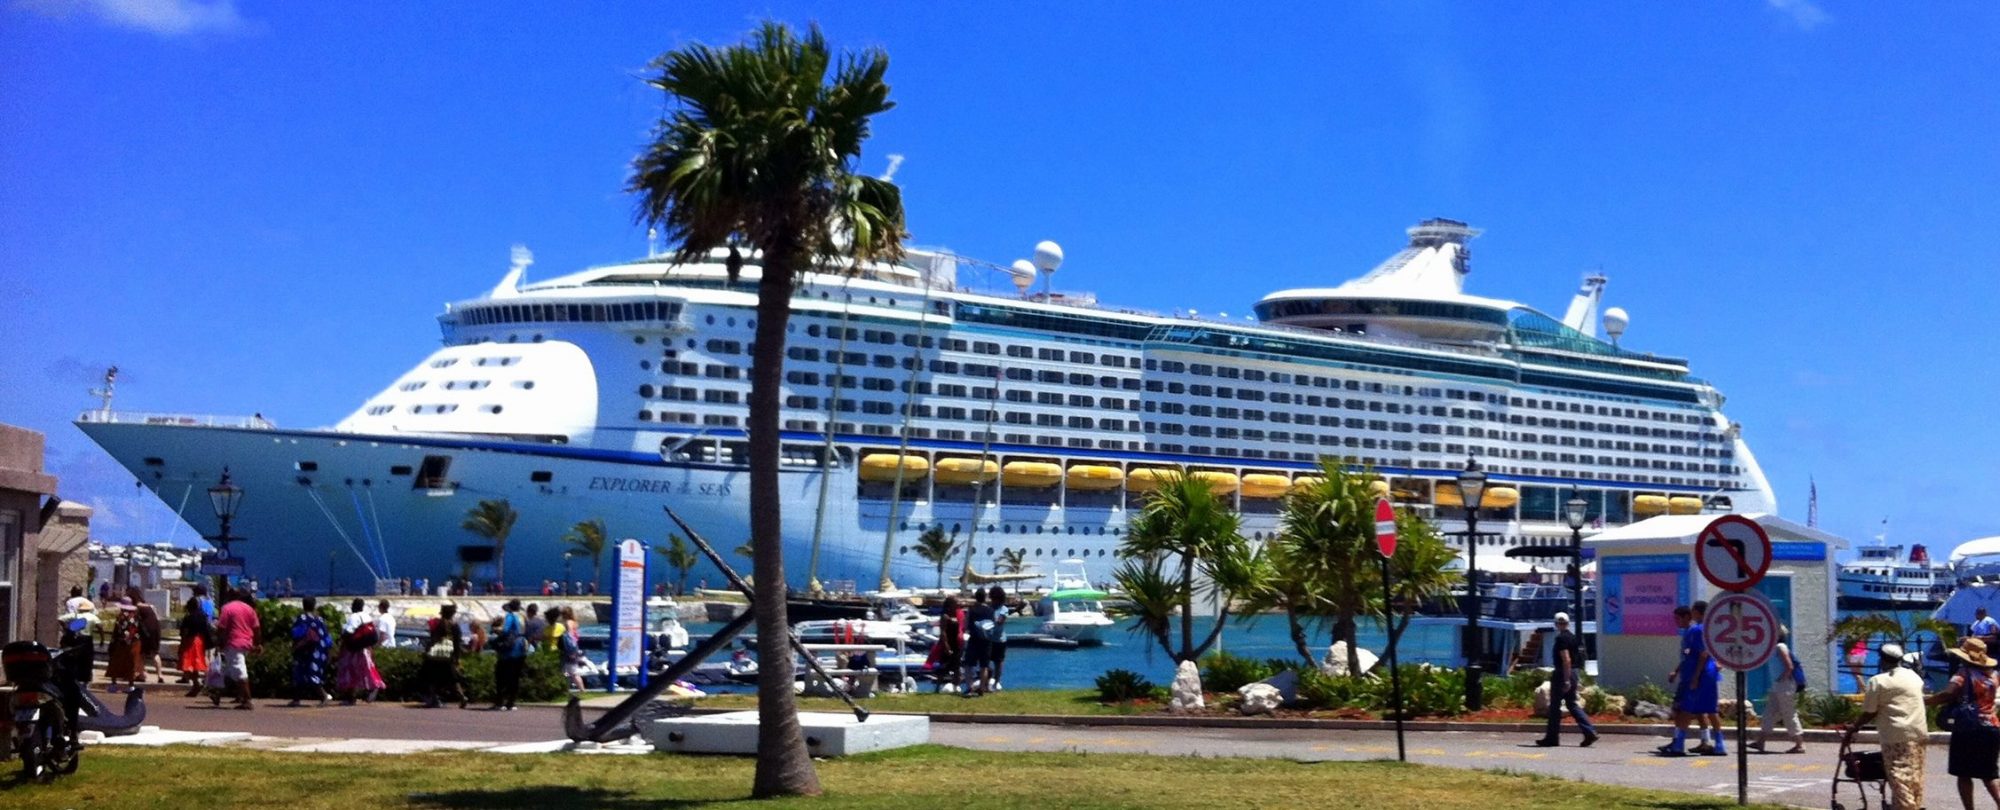 bermuda ports cruise ships